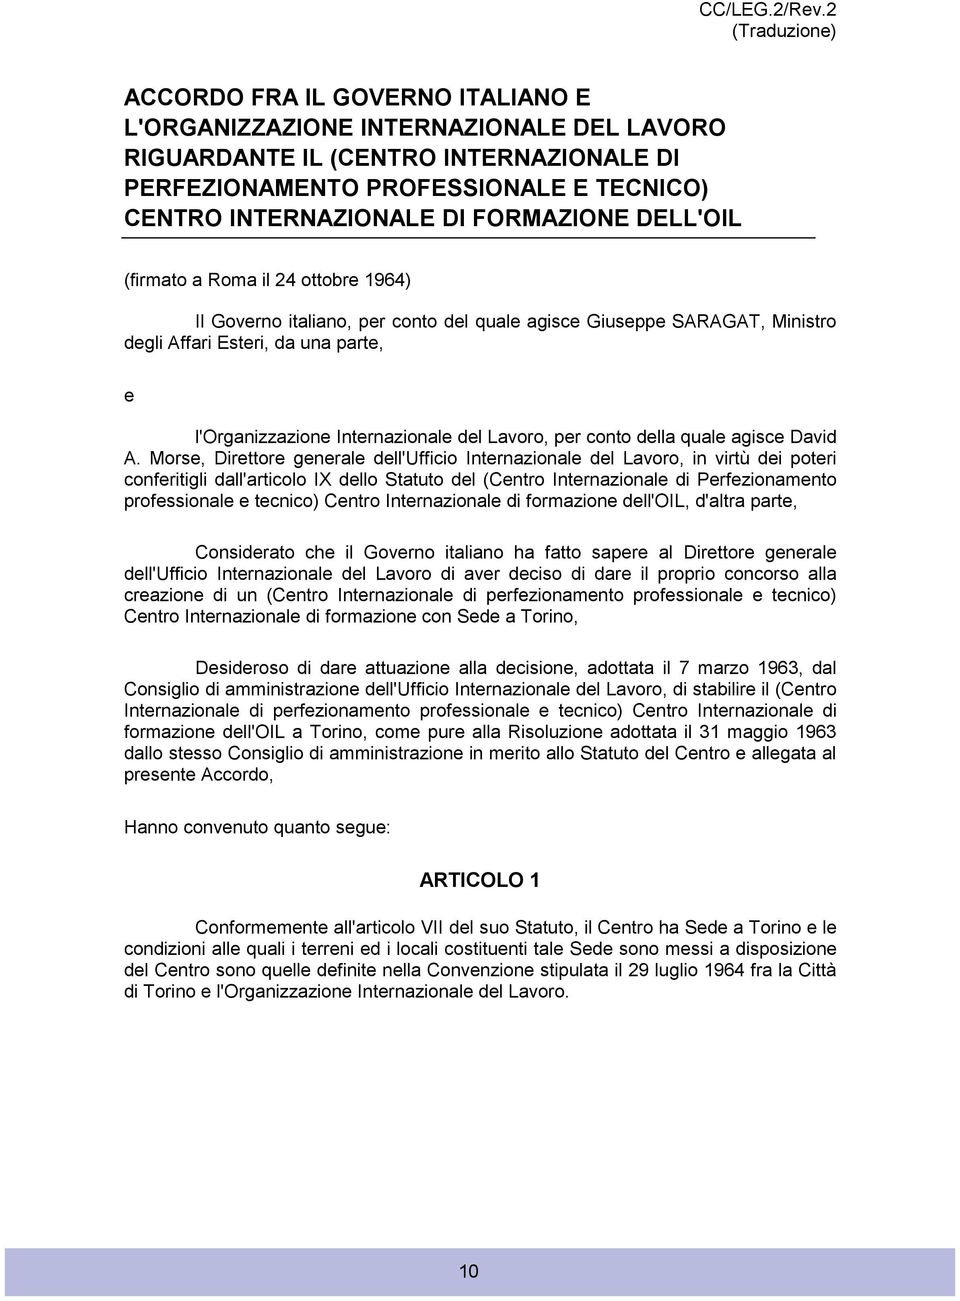 FORMAZIONE DELL'OIL (firmato a Roma il 24 ottobre 1964) Il Governo italiano, per conto del quale agisce Giuseppe SARAGAT, Ministro degli Affari Esteri, da una parte, e l'organizzazione Internazionale